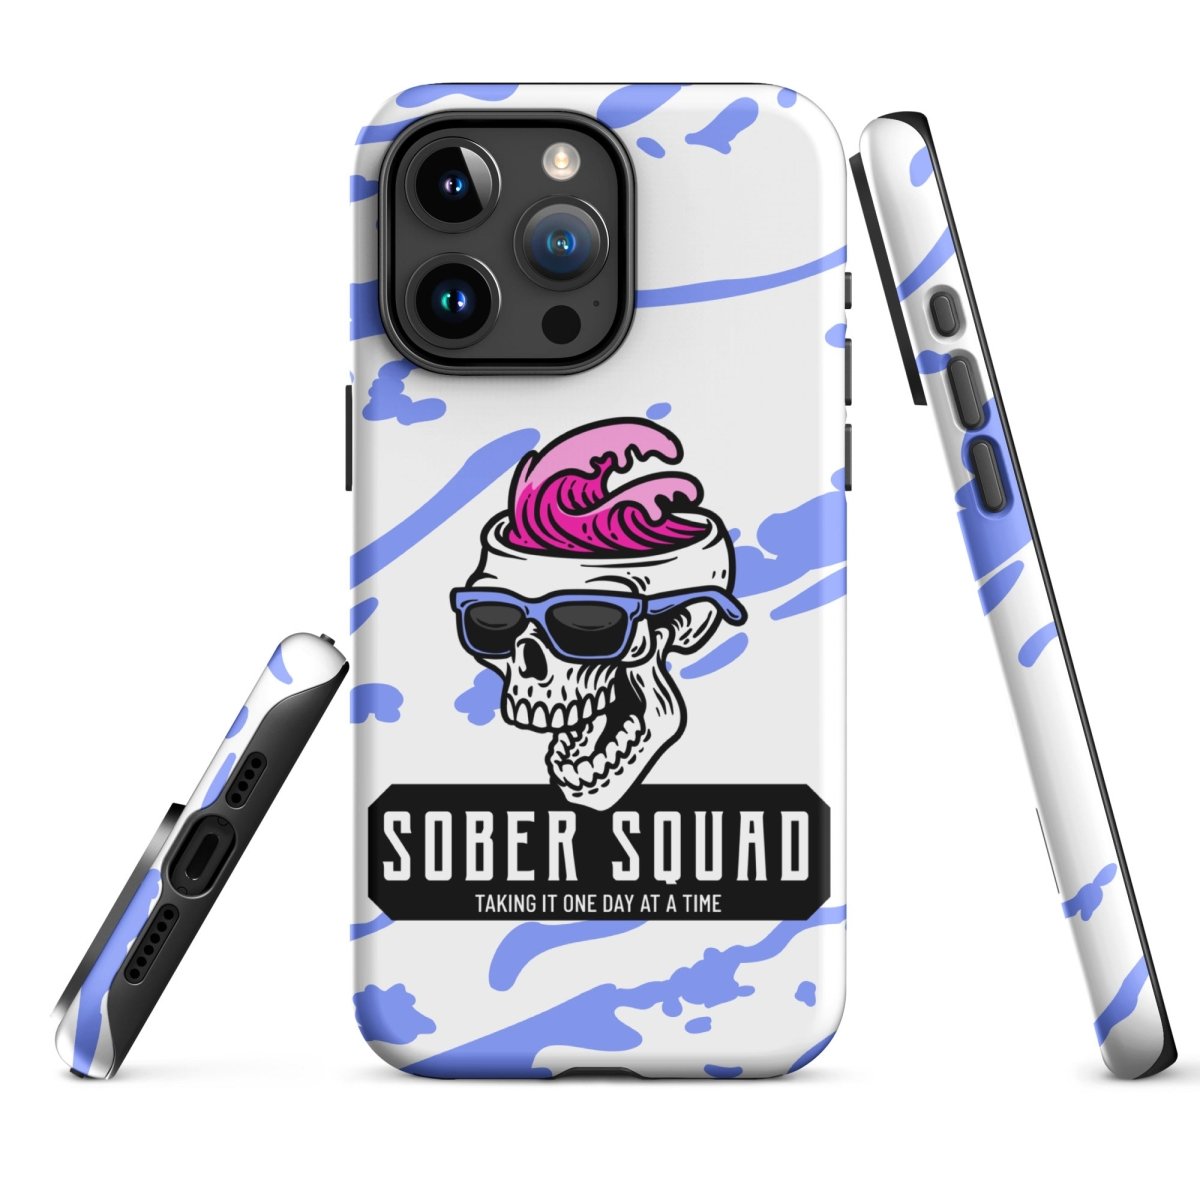 Sober Squad Tough Case for iPhone® - Skull Wave Design - Sobervation